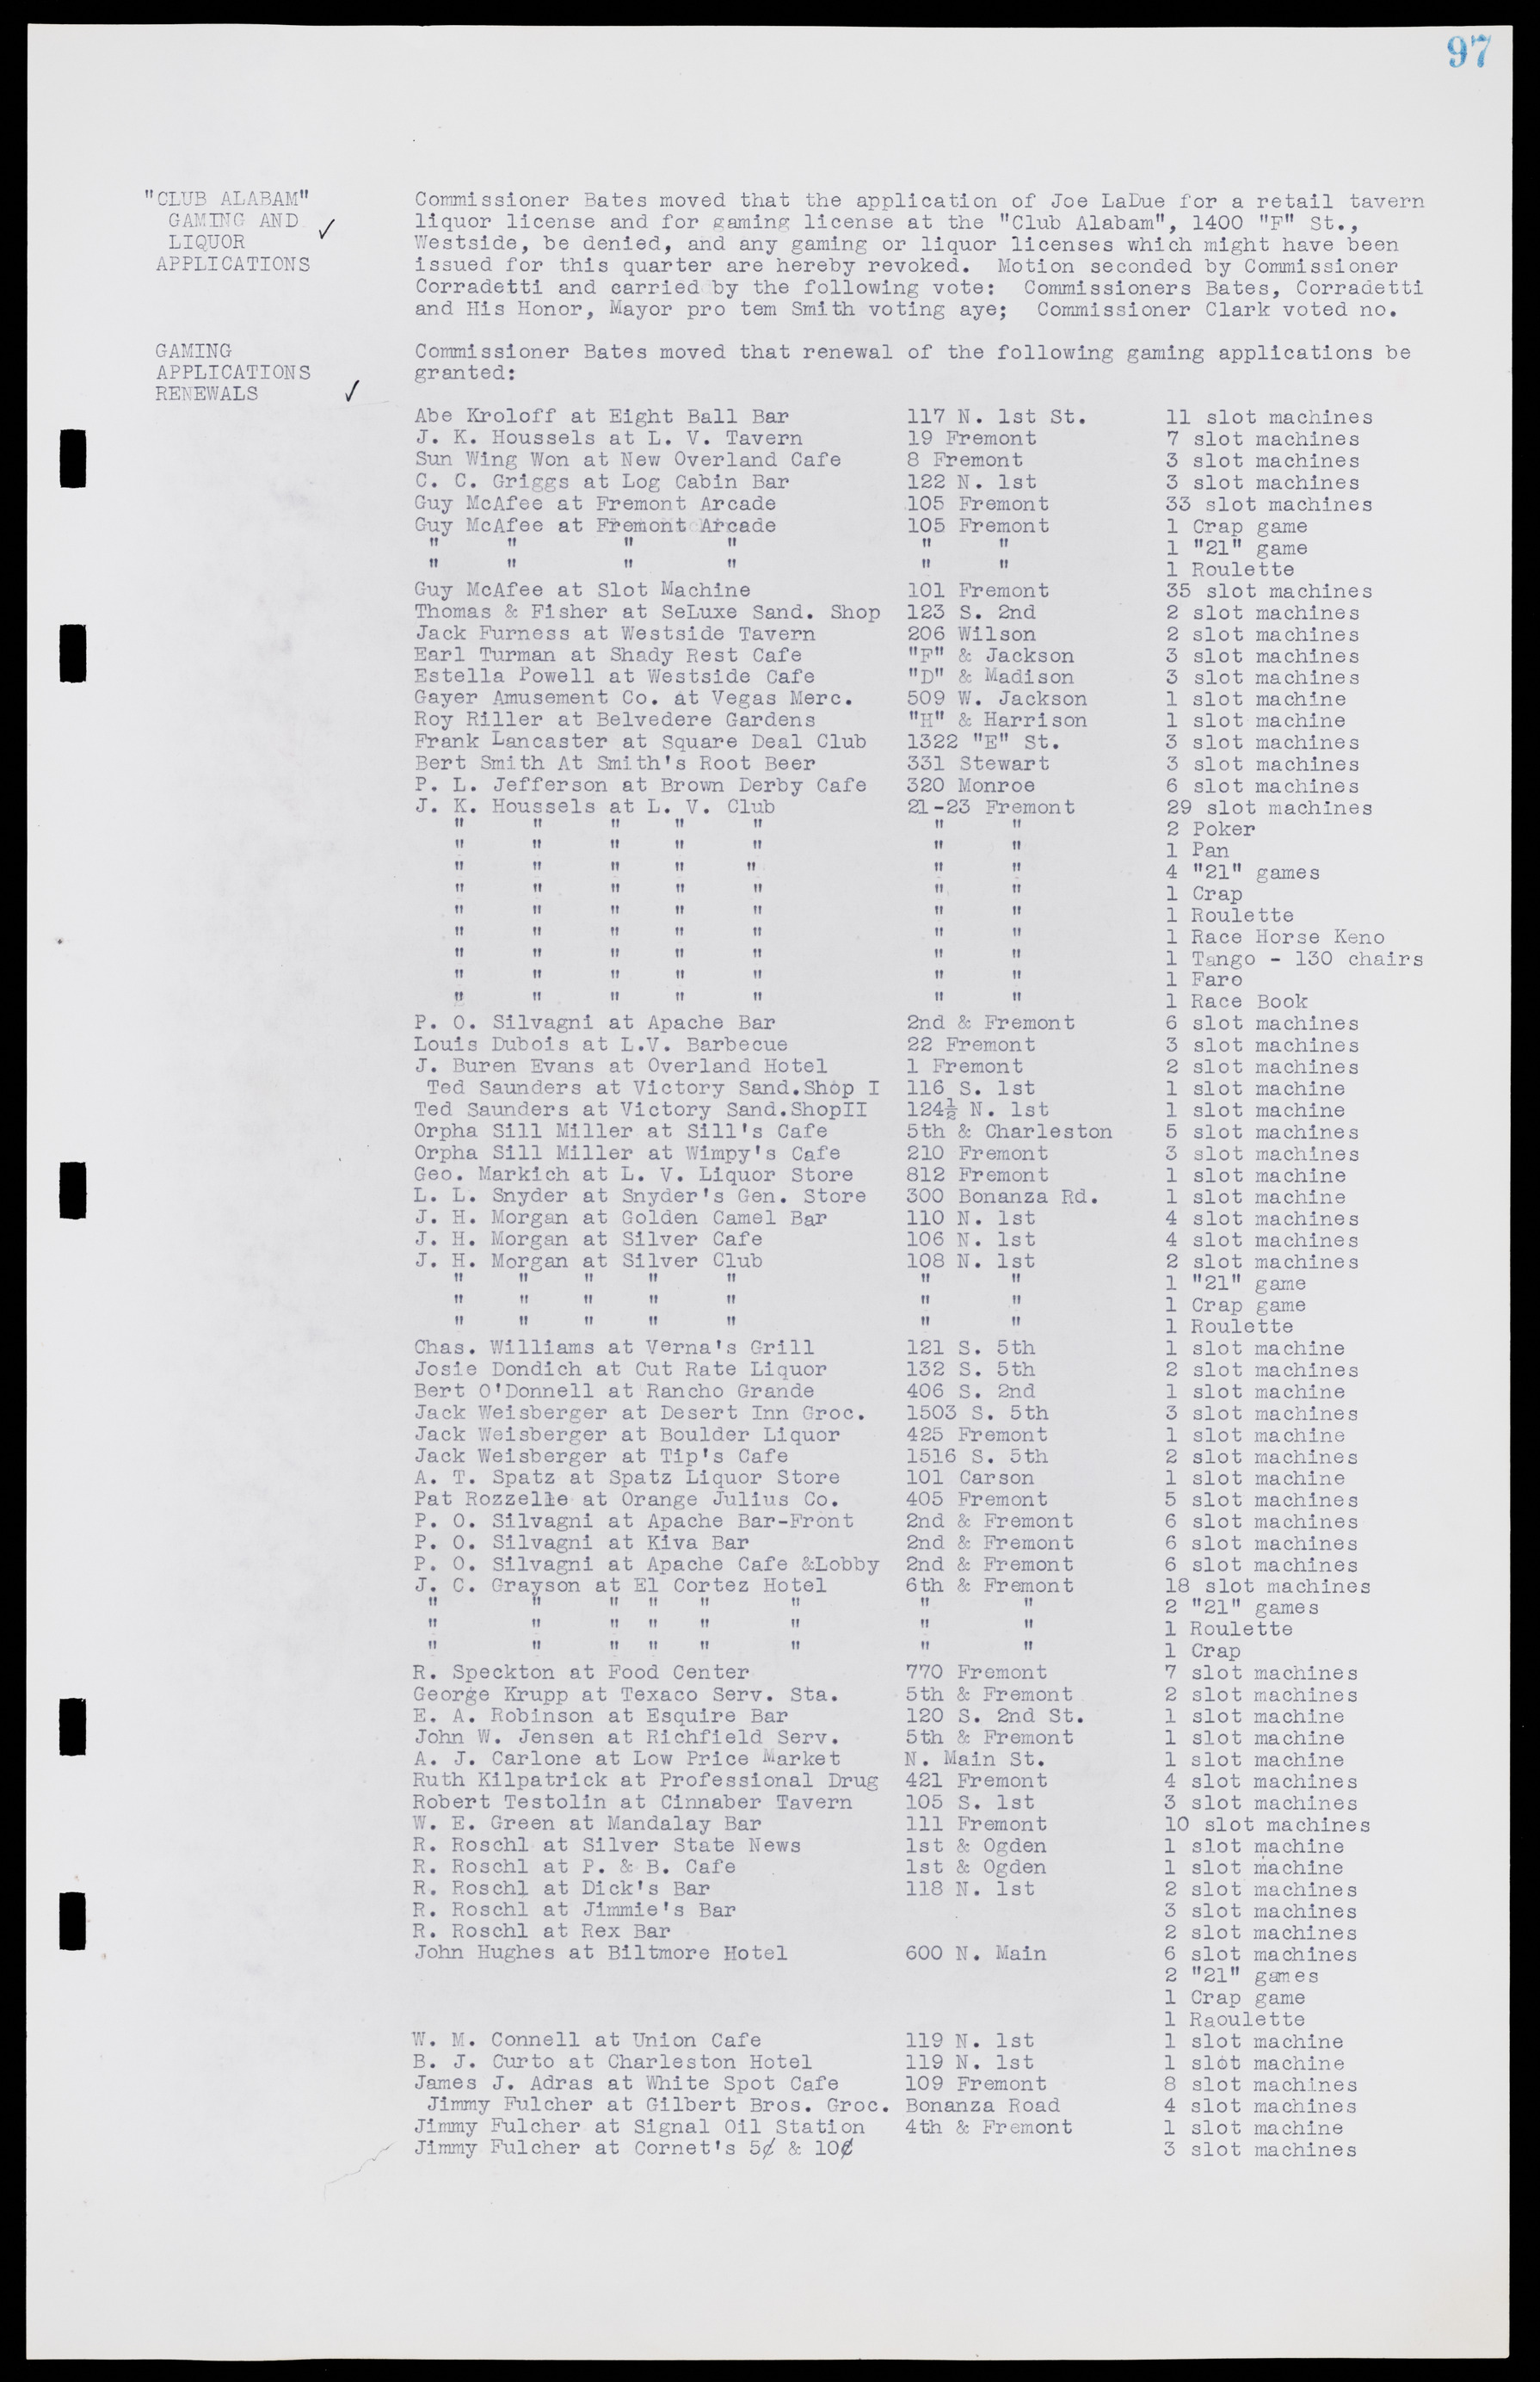 Las Vegas City Commission Minutes, August 11, 1942 to December 30, 1946, lvc000005-111